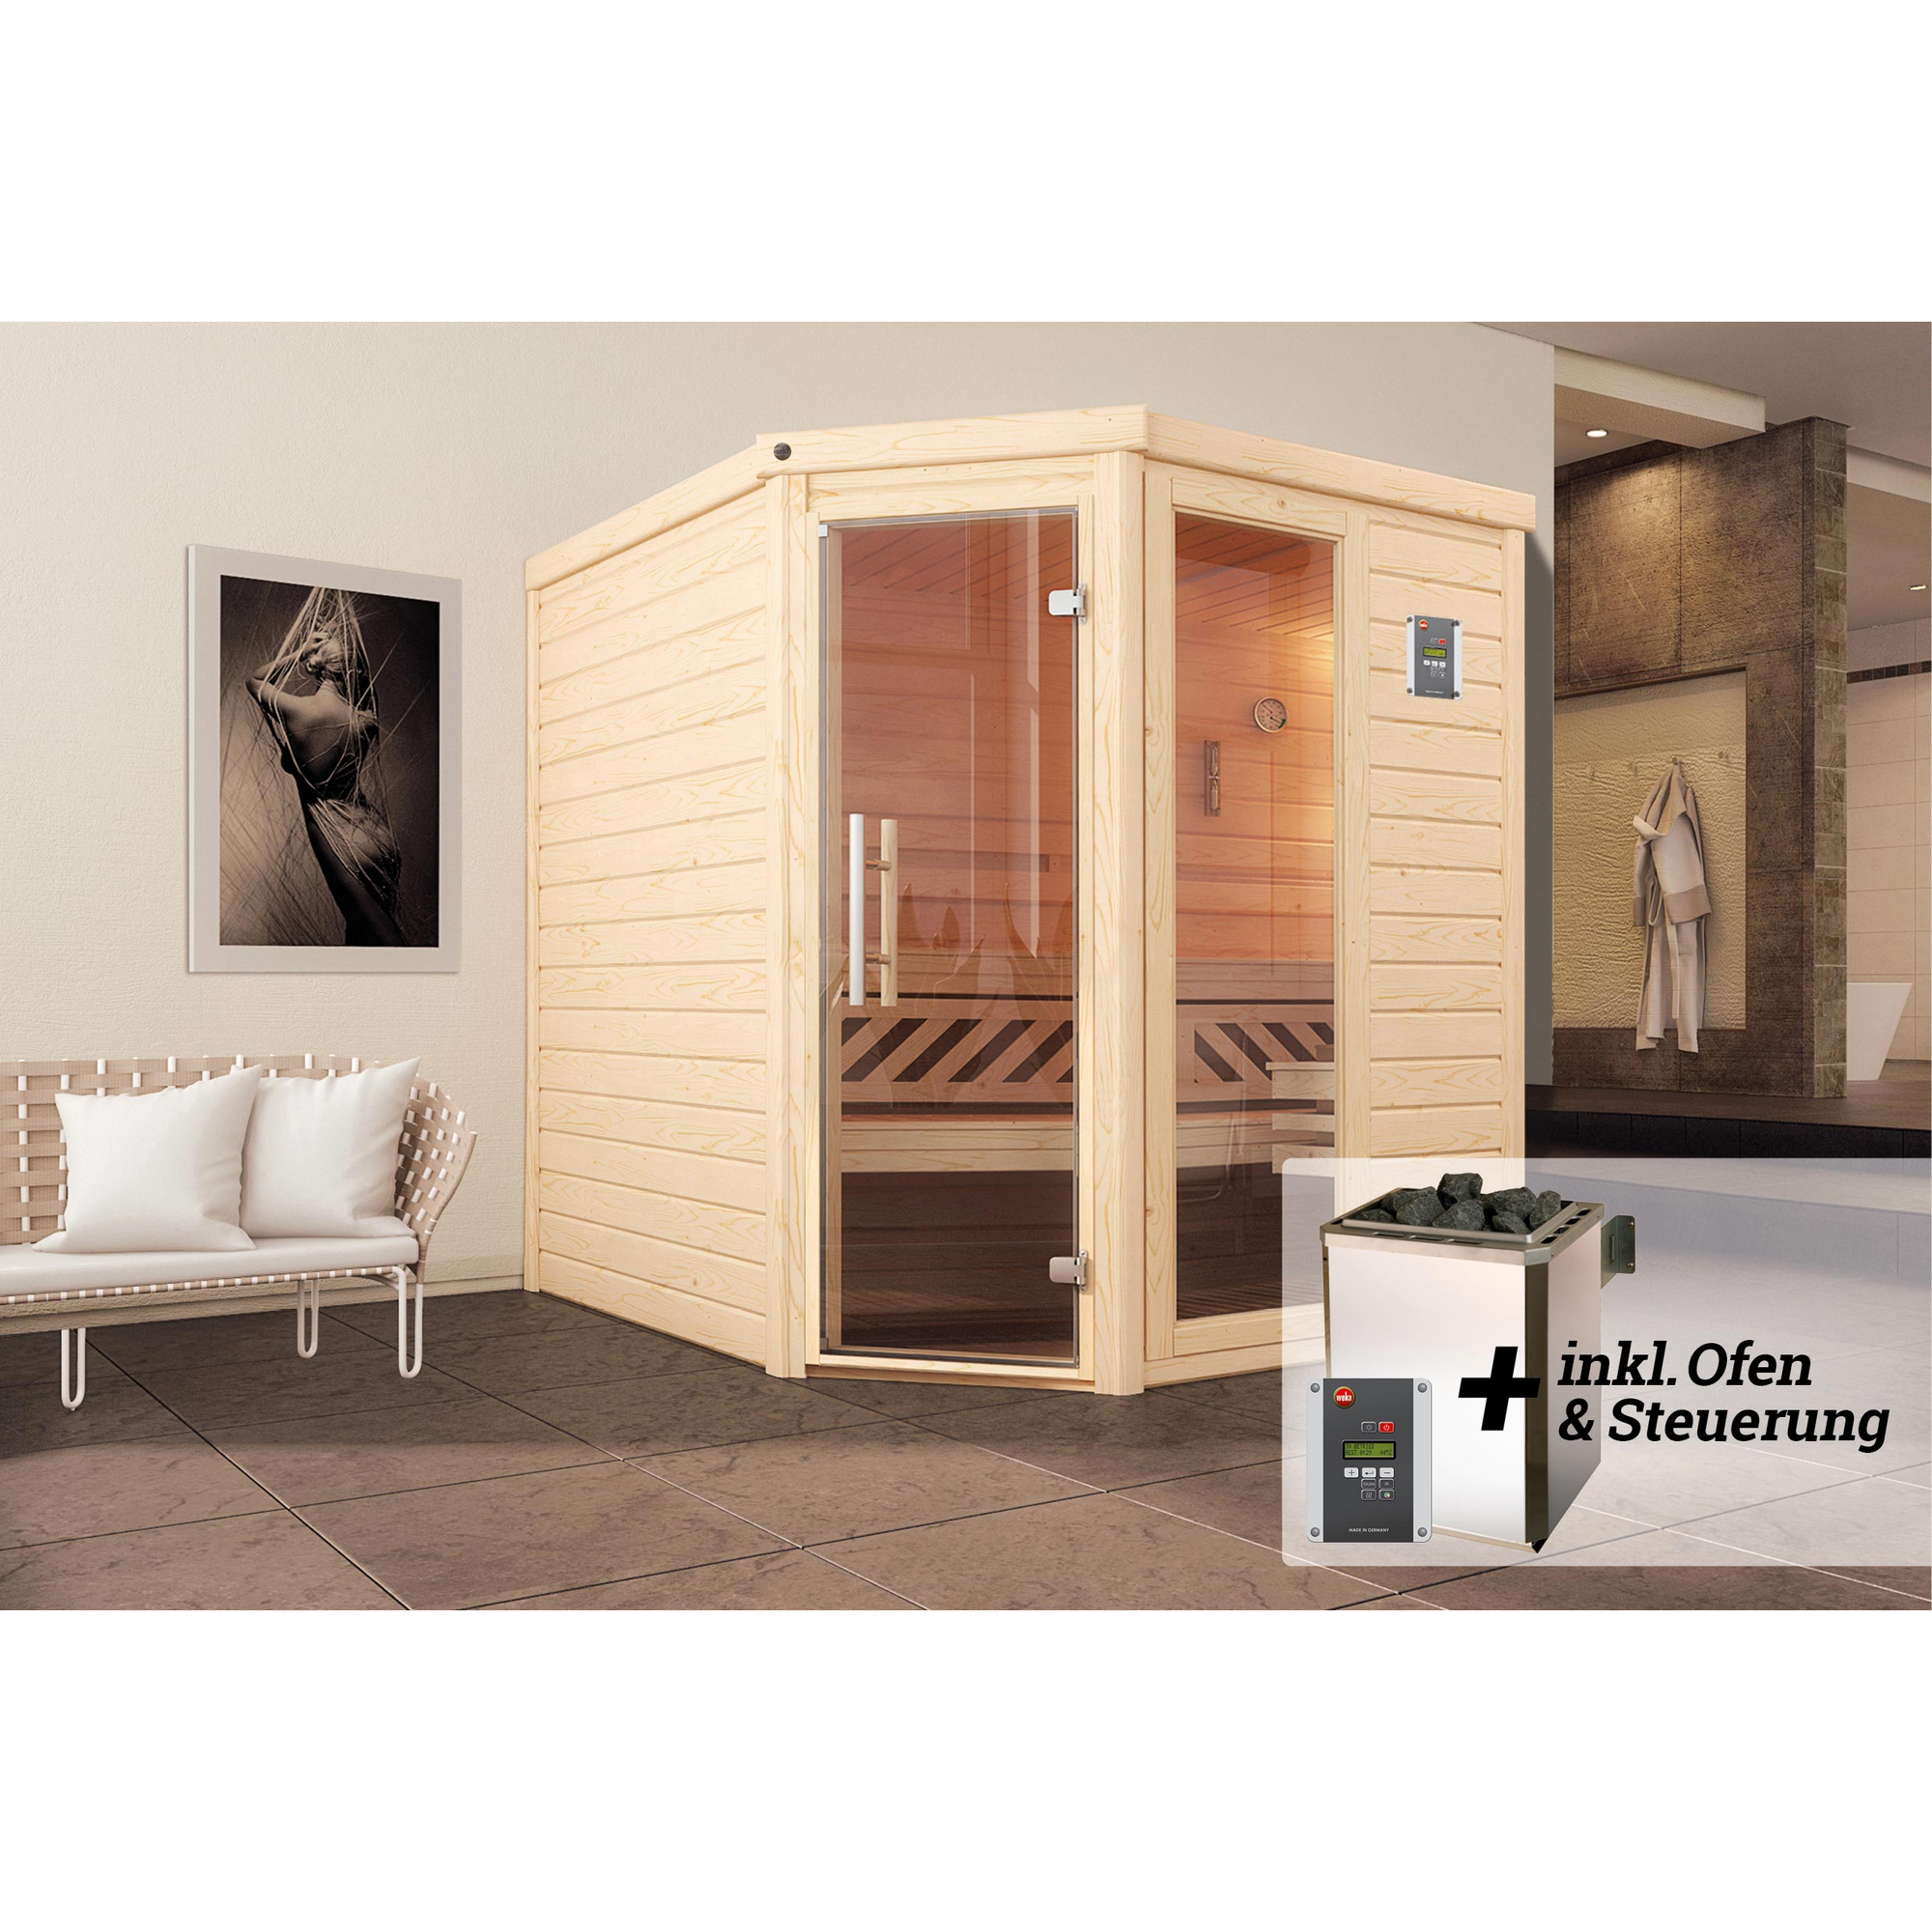 Premium-Massivholz-Sauna 'Turku 2 Eck' mit 7,5 kW OS-Ofenset, Steuerung, Glastür, Fenster 188 x 188 x 205 cm + product picture